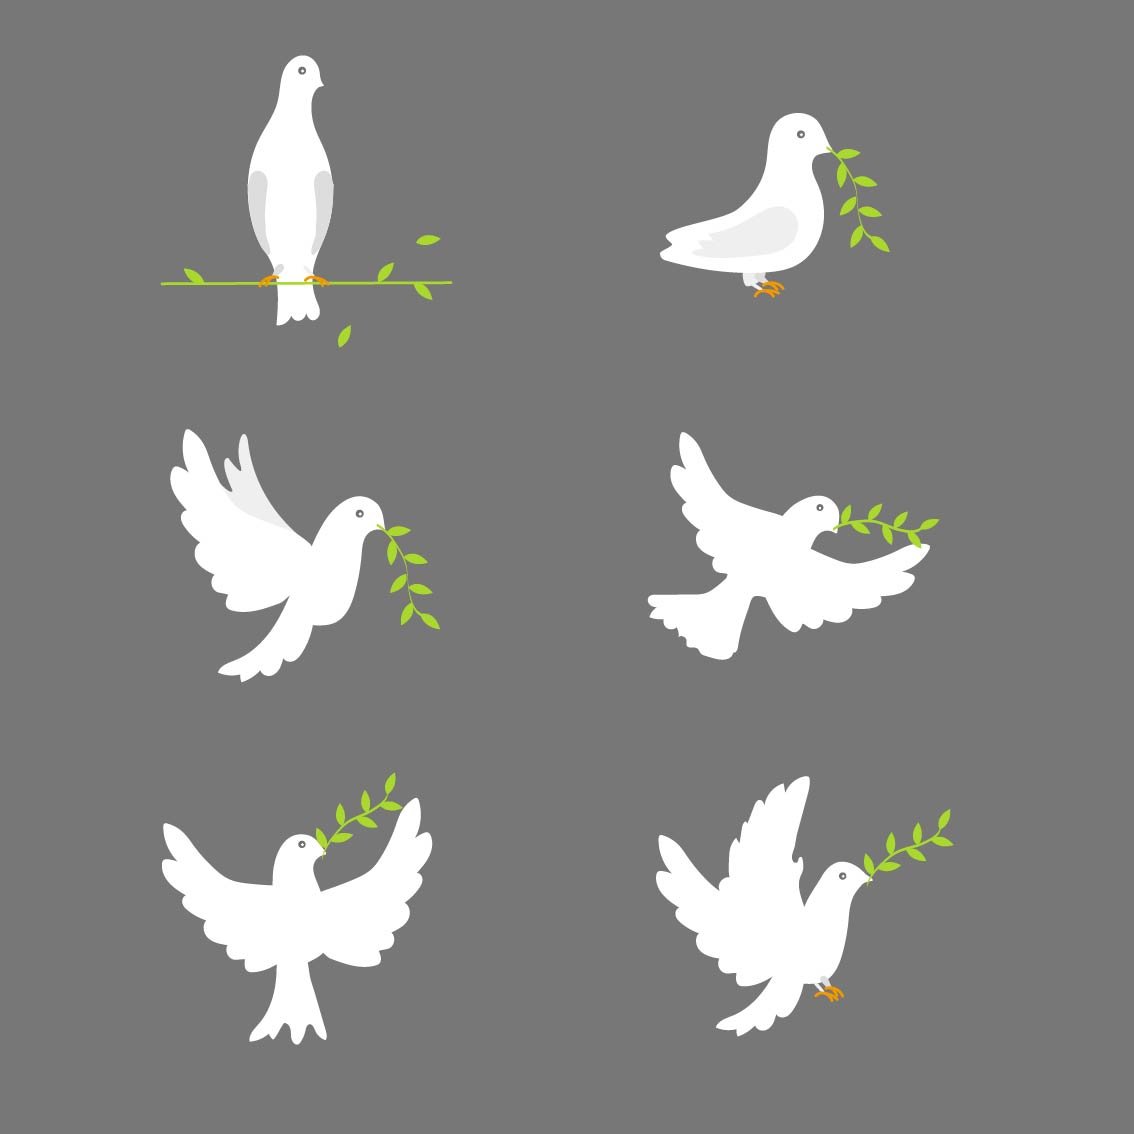 Chim Bồ Câu Bay Chuyến  Miễn Phí vector hình ảnh trên Pixabay  Pixabay